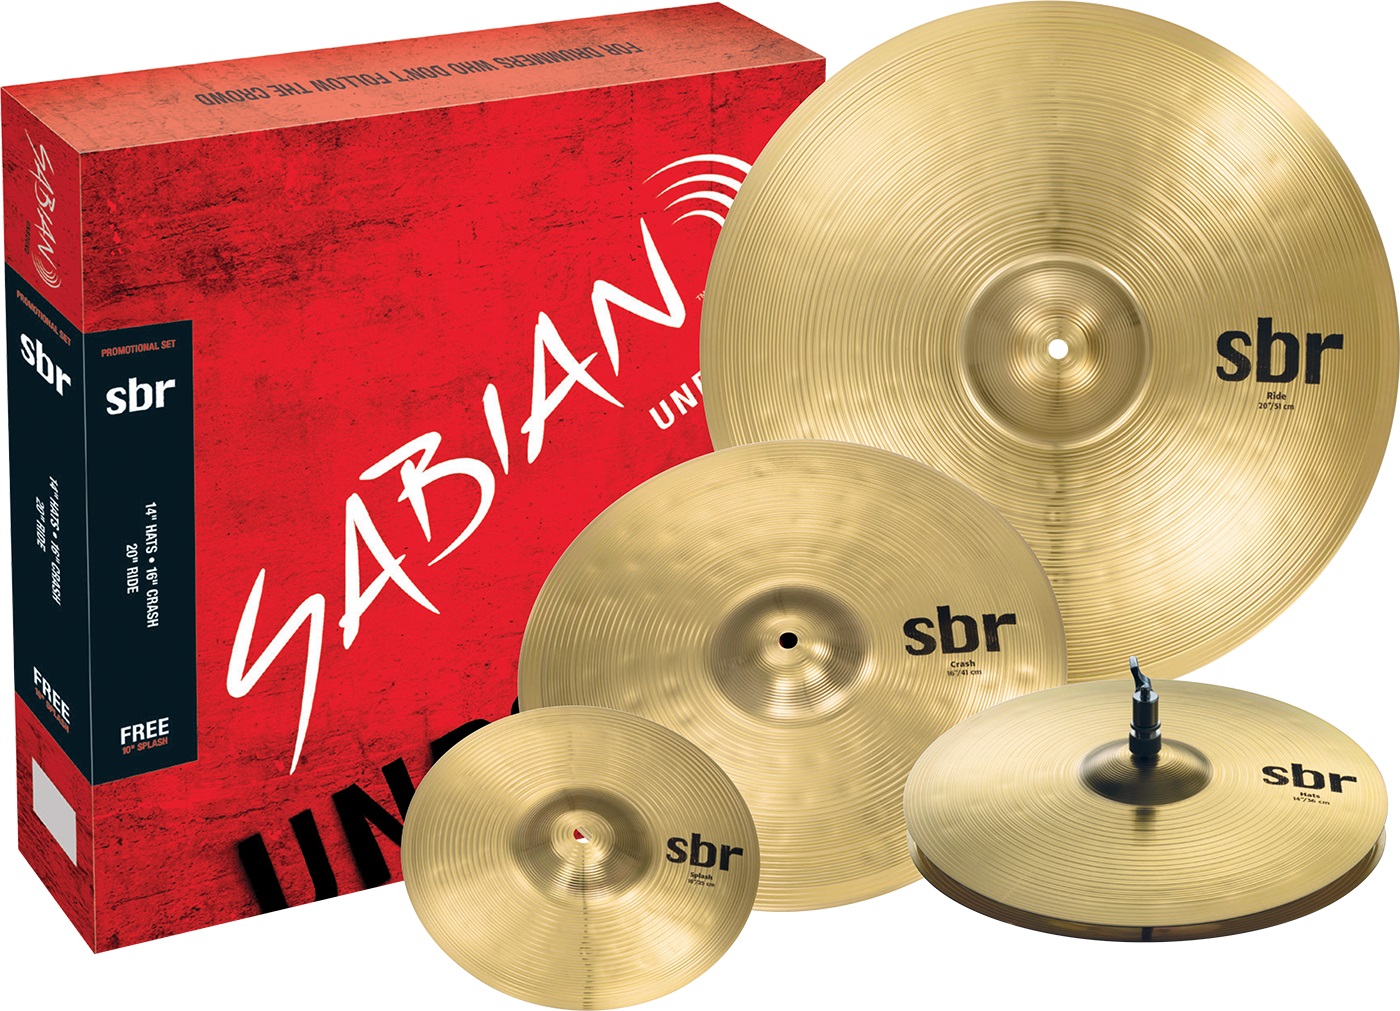 Тарелки, барабаны для ударных установок Sabian SBr Promotional Pack тарелки барабаны для ударных установок sabian 16 aax thin crash